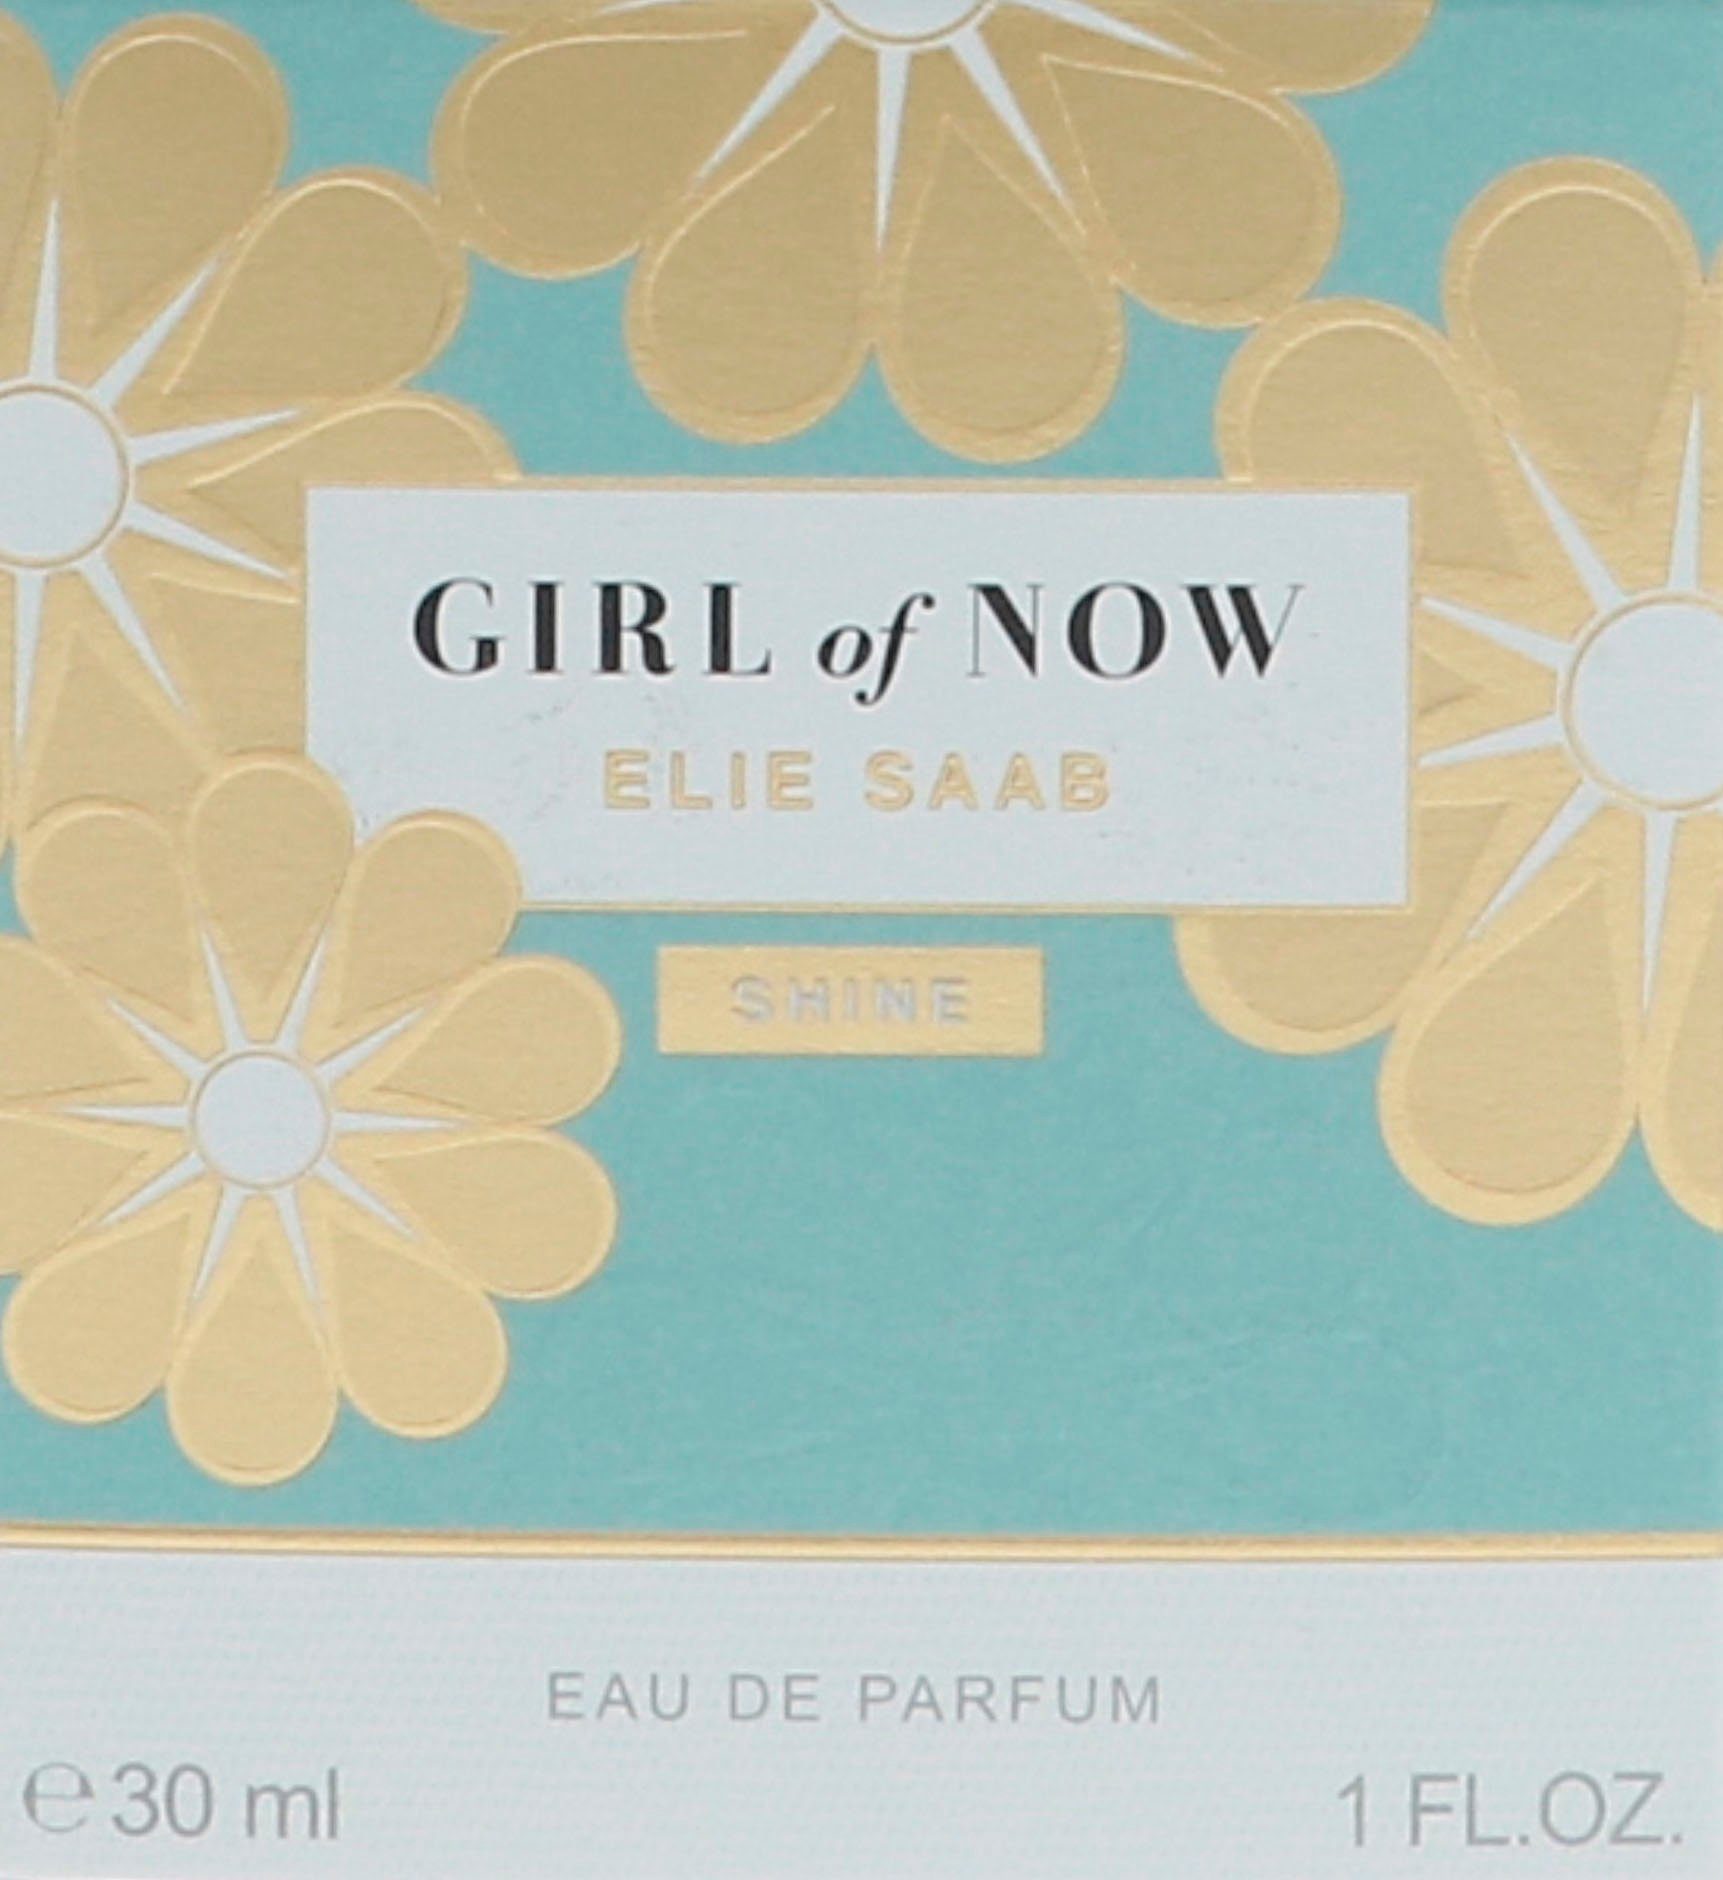 ELIE SAAB Eau de of Girl Shine Now Parfum